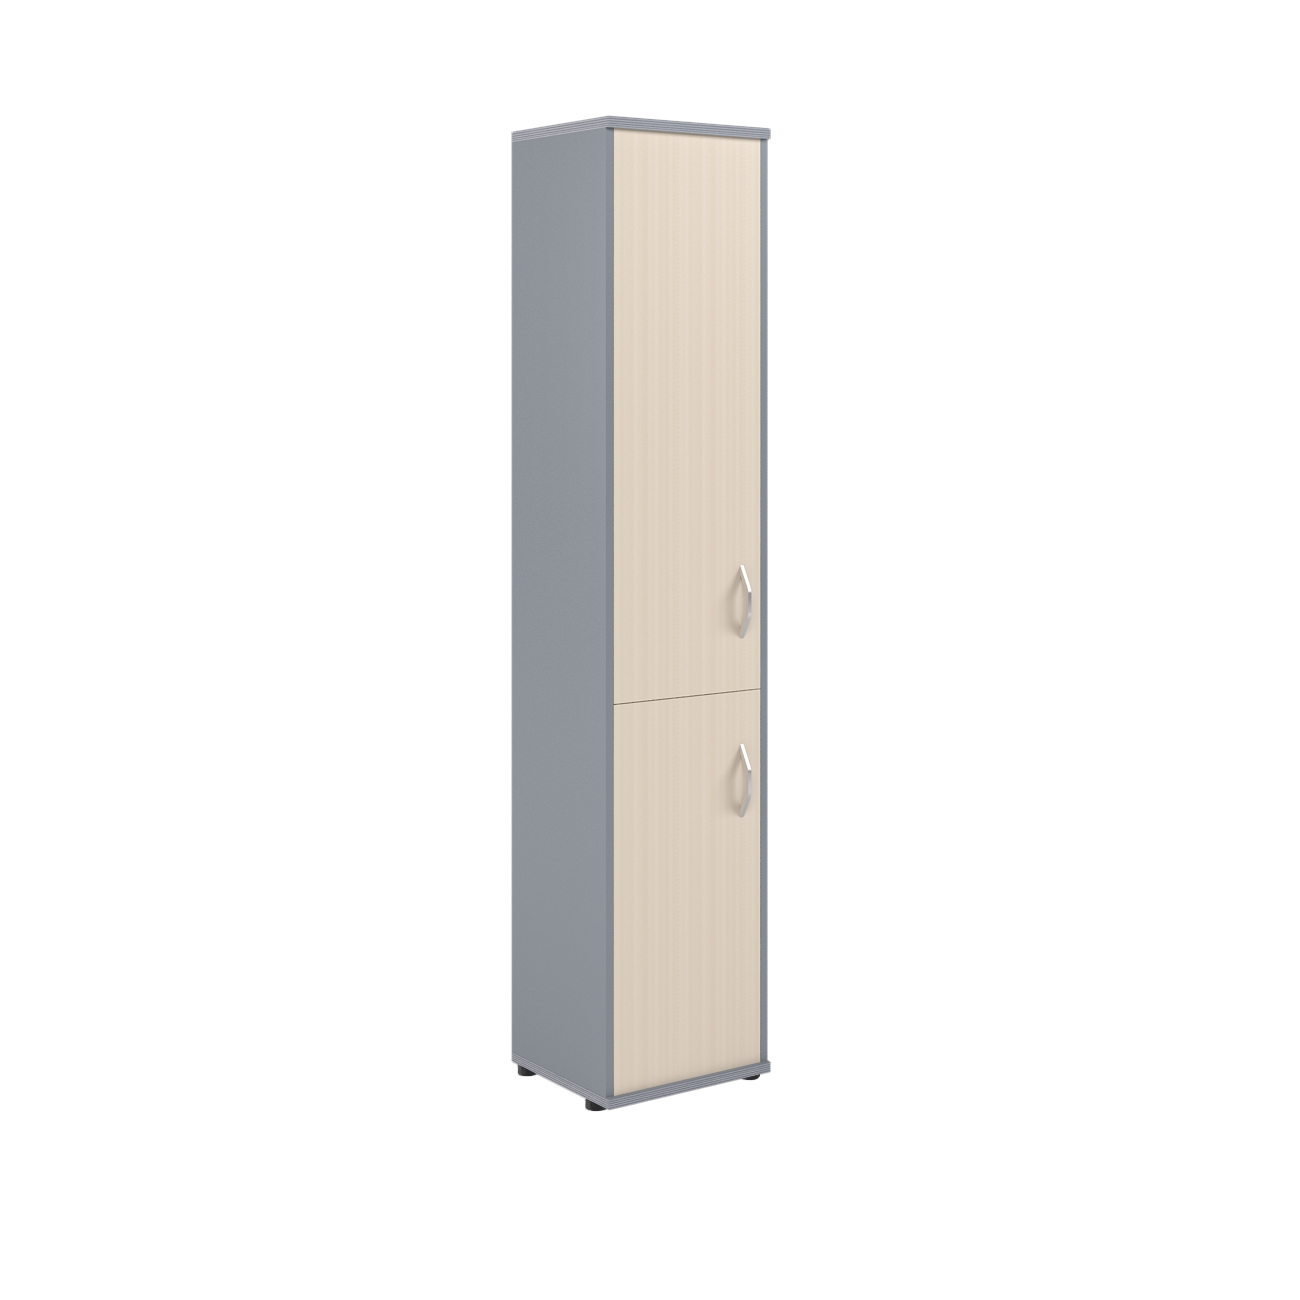 Шкаф колонка с глухой средней и малой дверьми СУ-1.3(L) клен/металлик 406*365*1975 Imago | Защита-Офис - интернет-магазин сейфов, кресел, металлической 